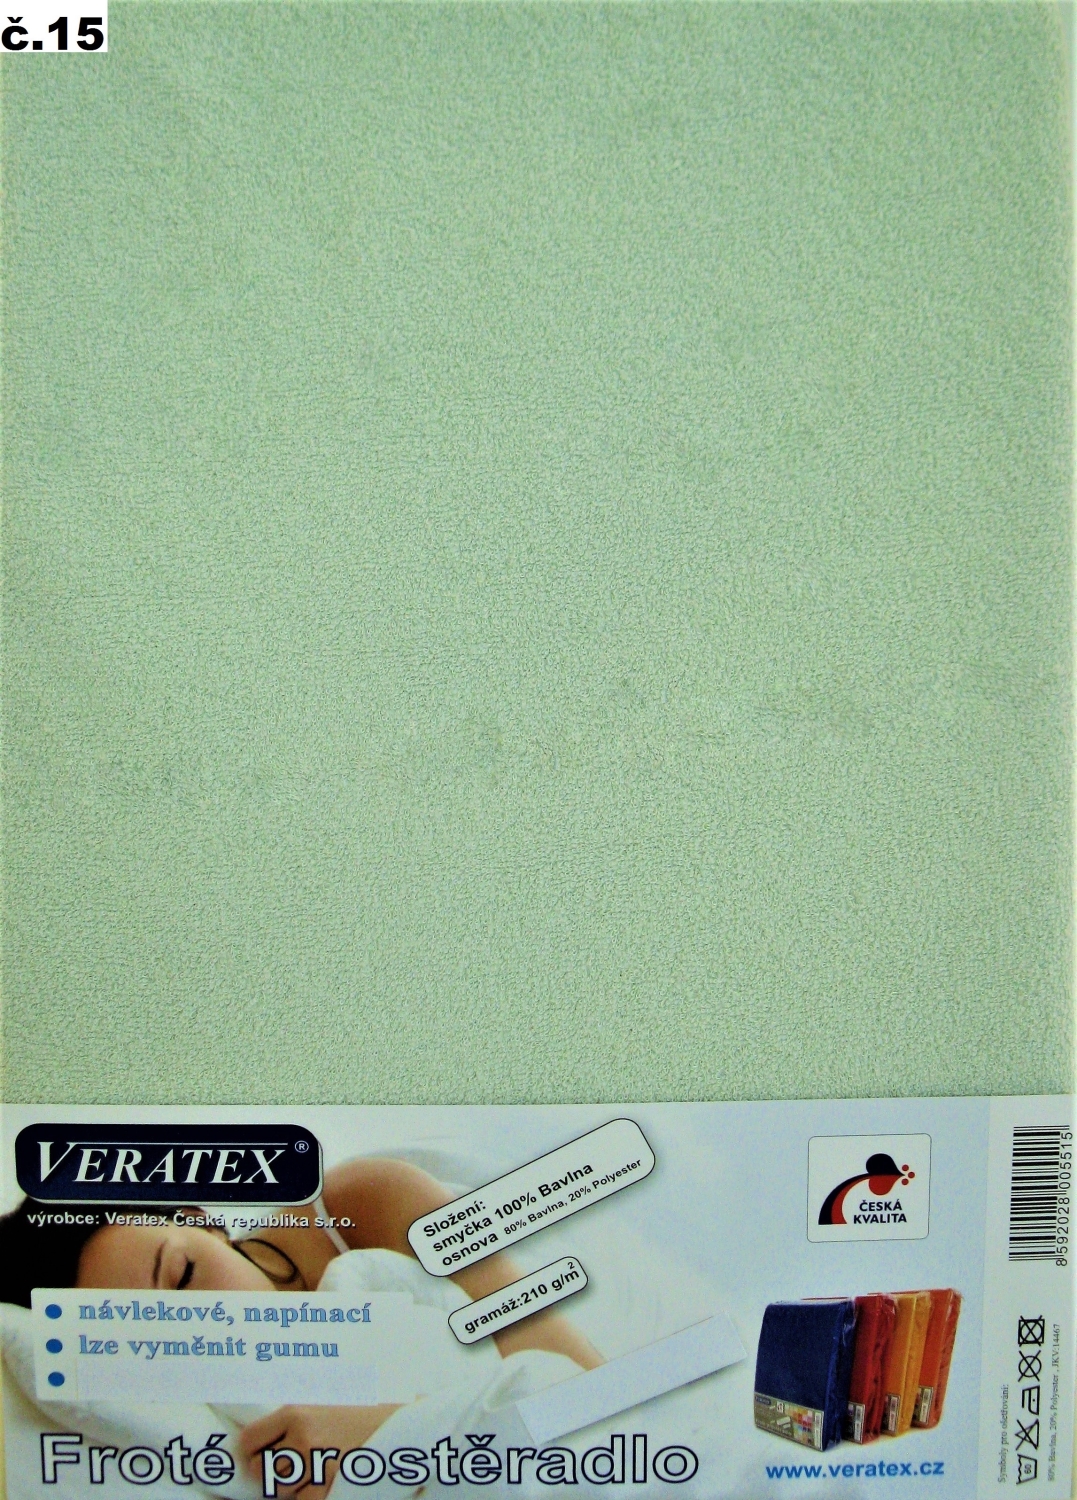 Veratex Froté prostěradlo postýlka 70x160/15 cm (č.15 sv.zelená)